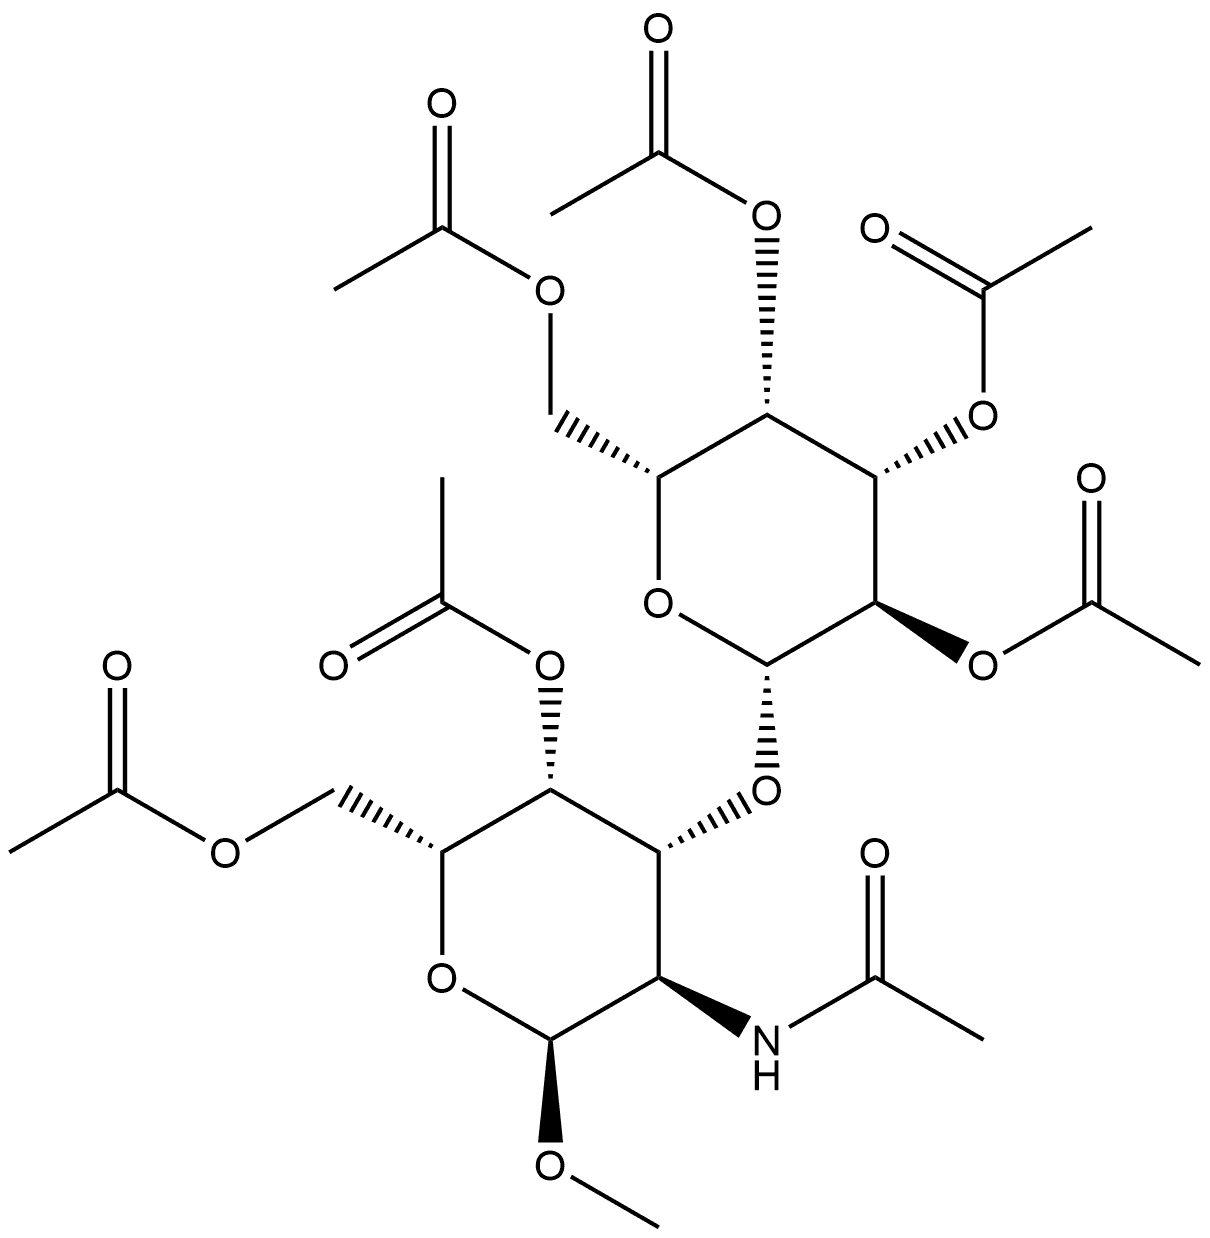 α-D-Galactopyranoside, methyl 2-(acetylamino)-2-deoxy-3-O-(2,3,4,6-tetra-O-acetyl-β-D-galactopyranosyl)-, 4,6-diacetate